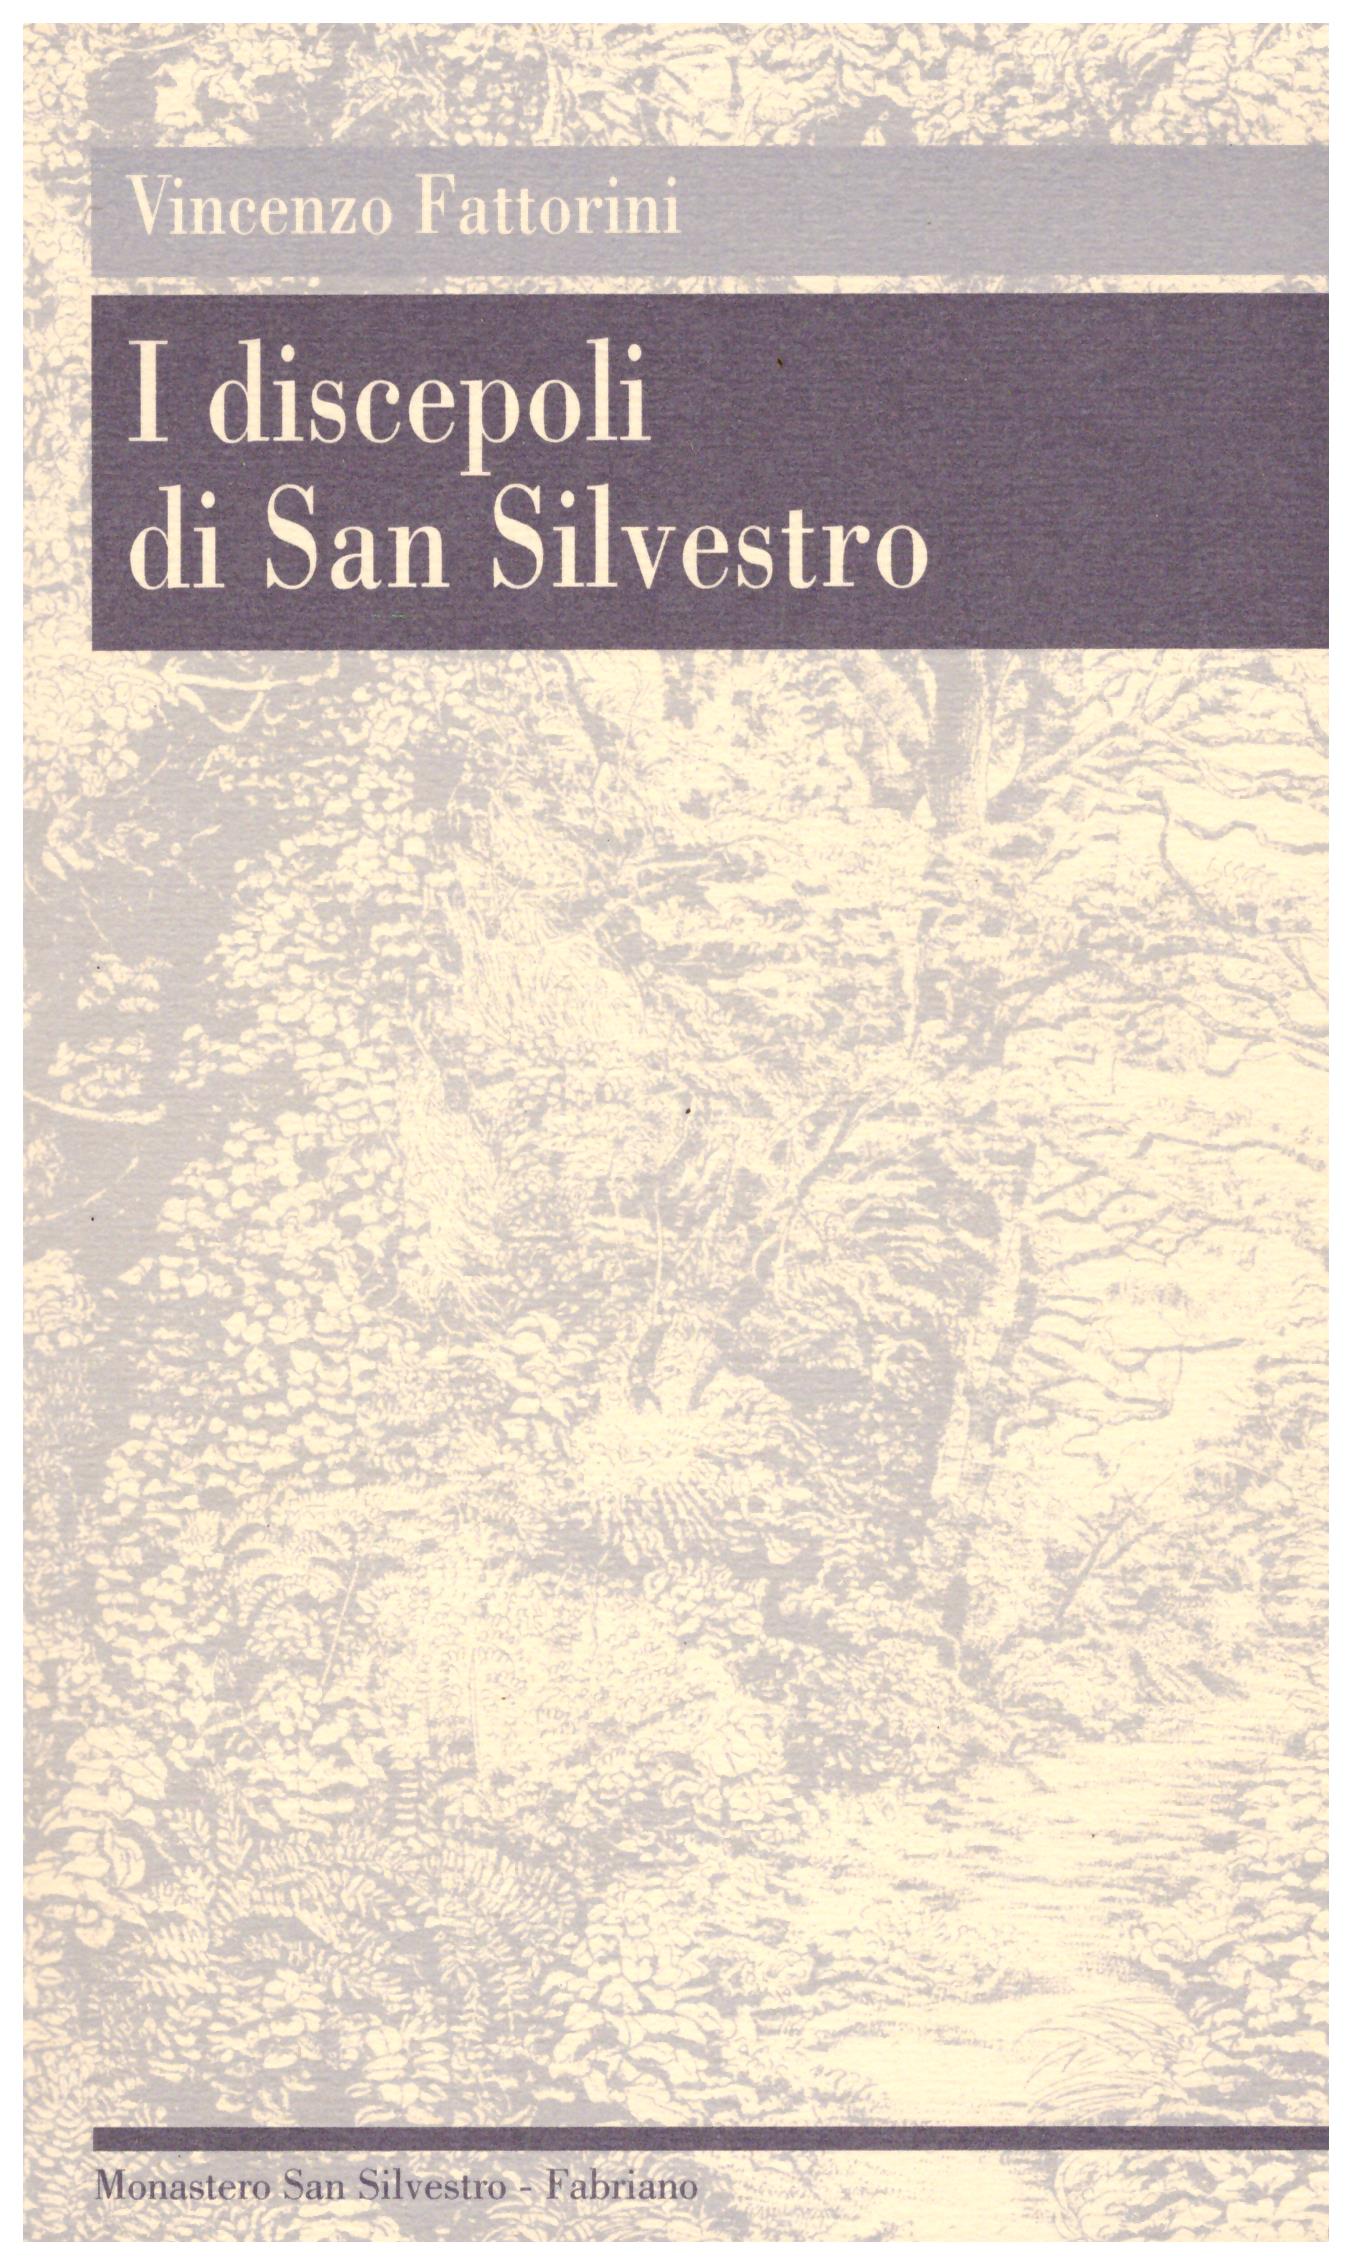 Titolo: I discepoli di San Silvestro    Autore: Vincenzo Fattorini    Editore: monastero san silvestro abate fabriano